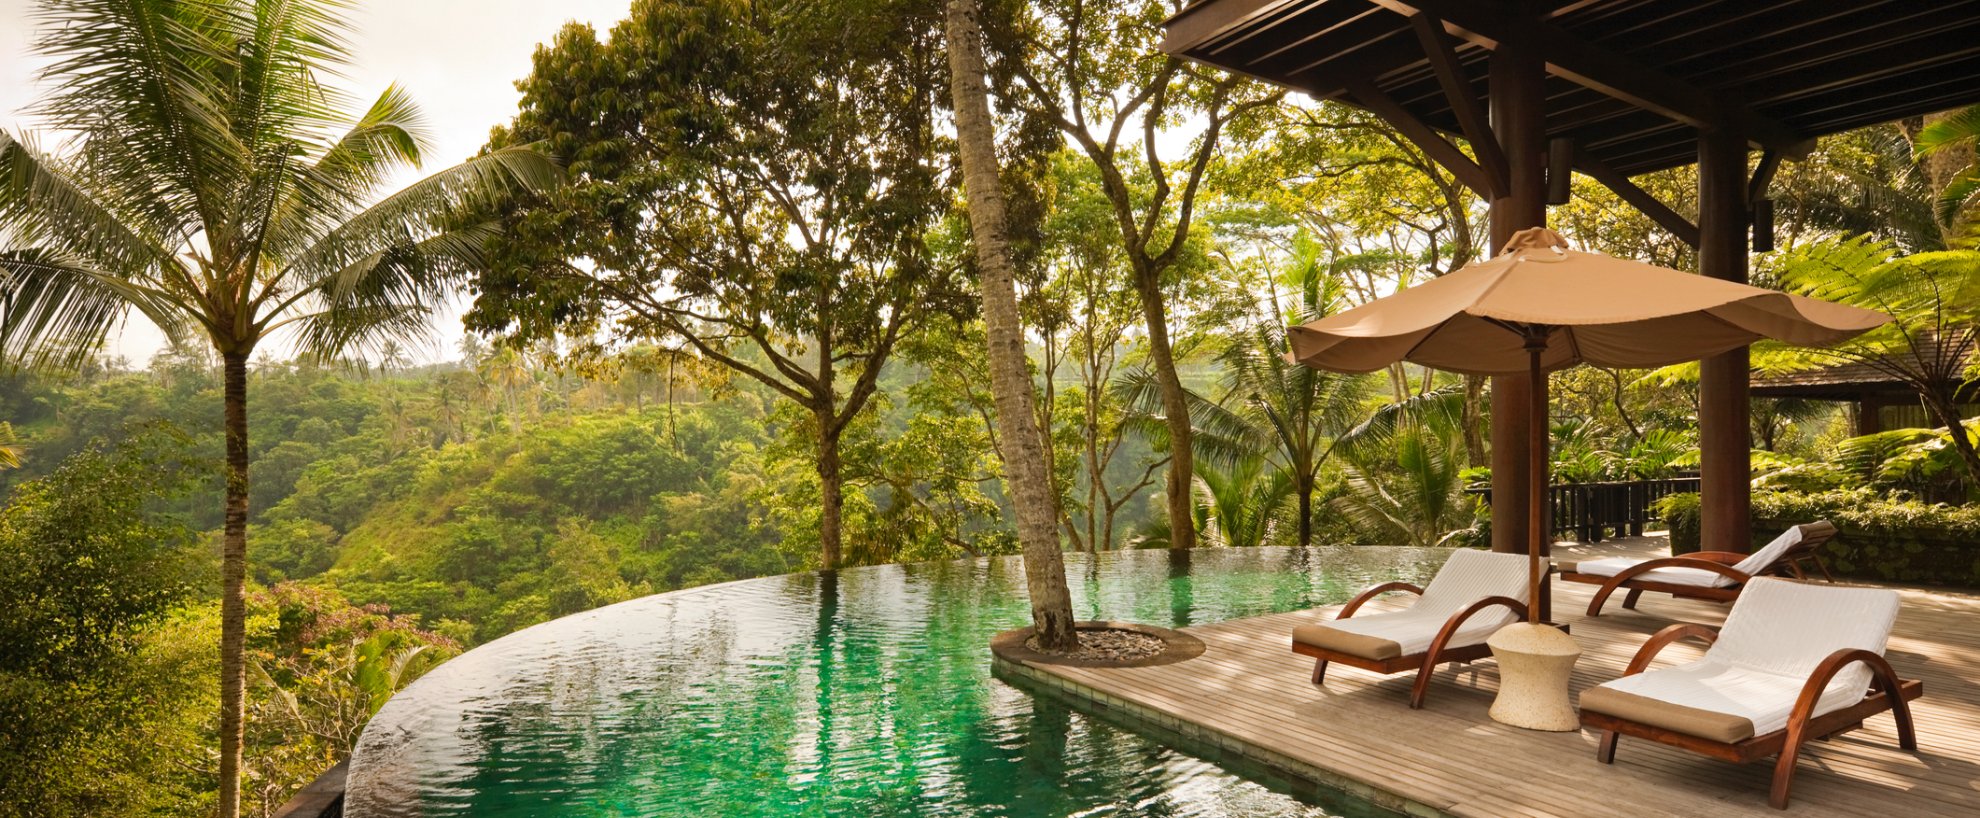 Indonesien Bali Como Shambhala Estate Pool Wanak